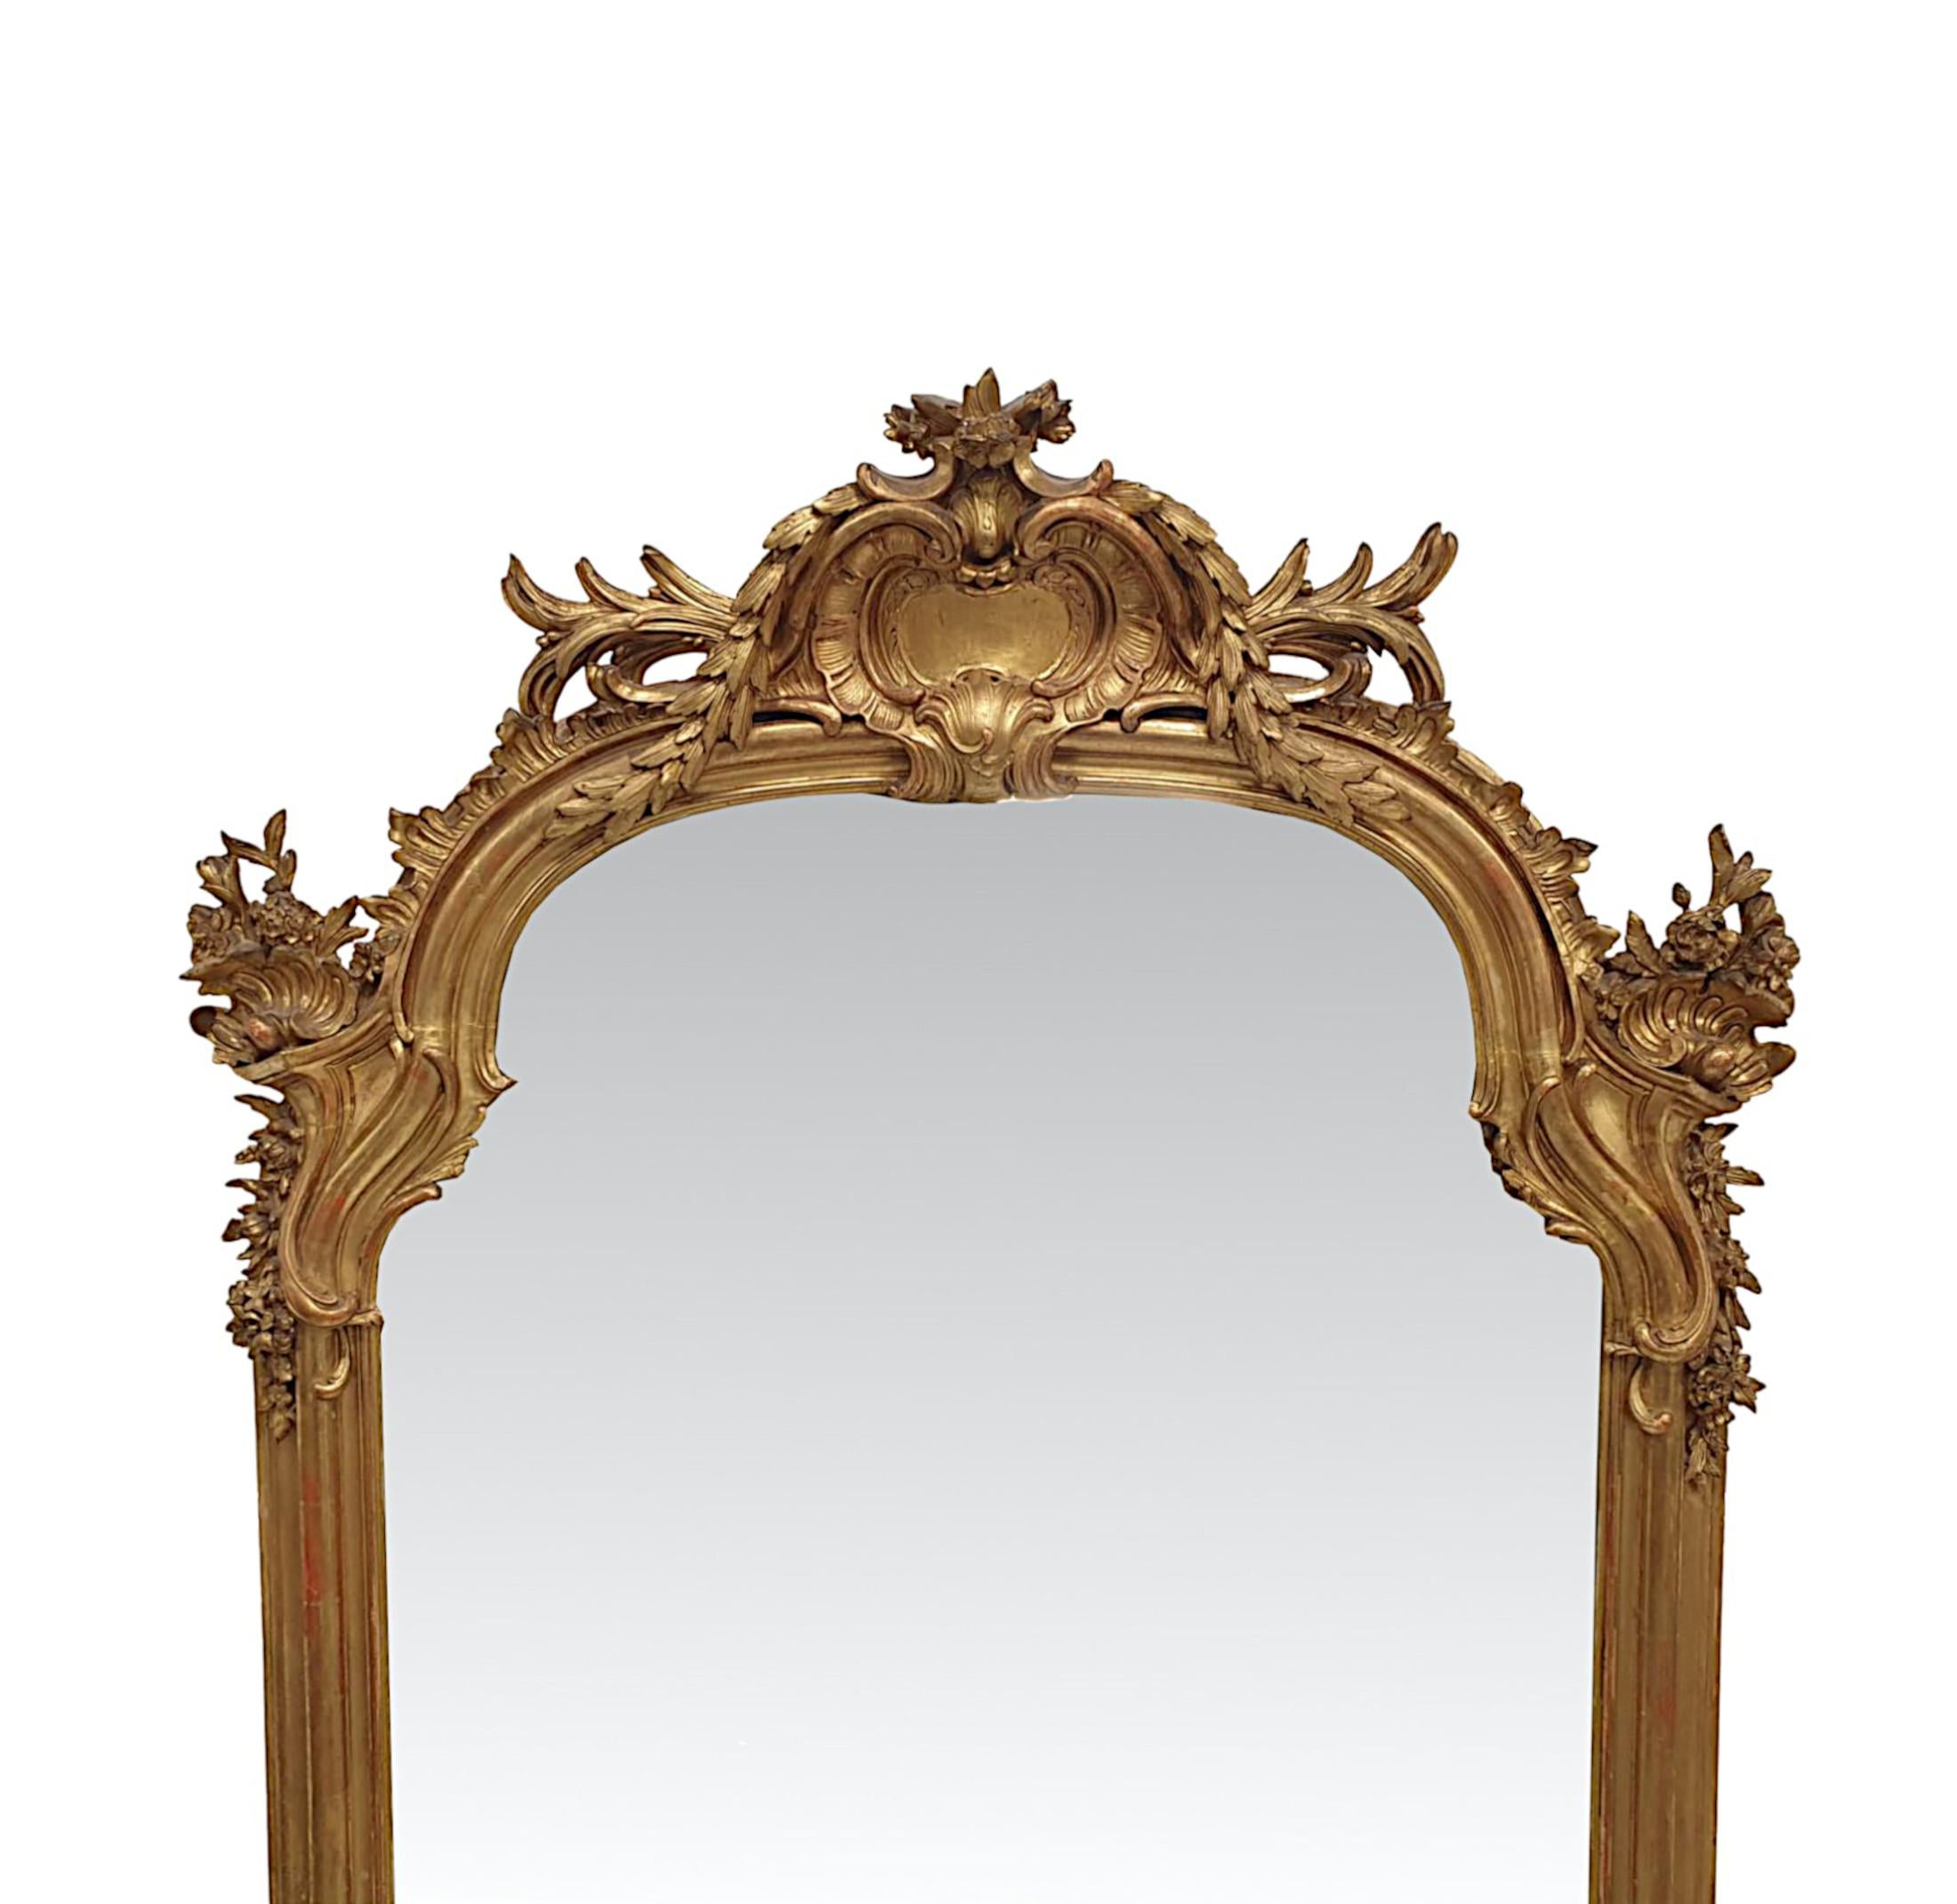 Un fabuleux miroir d'entrée ou de trumeau en bois doré du XIXe siècle, d'une qualité exceptionnelle et de grandes proportions.  La plaque de verre en forme de miroir est placée dans un cadre en bois doré finement sculpté à la main, mouluré et